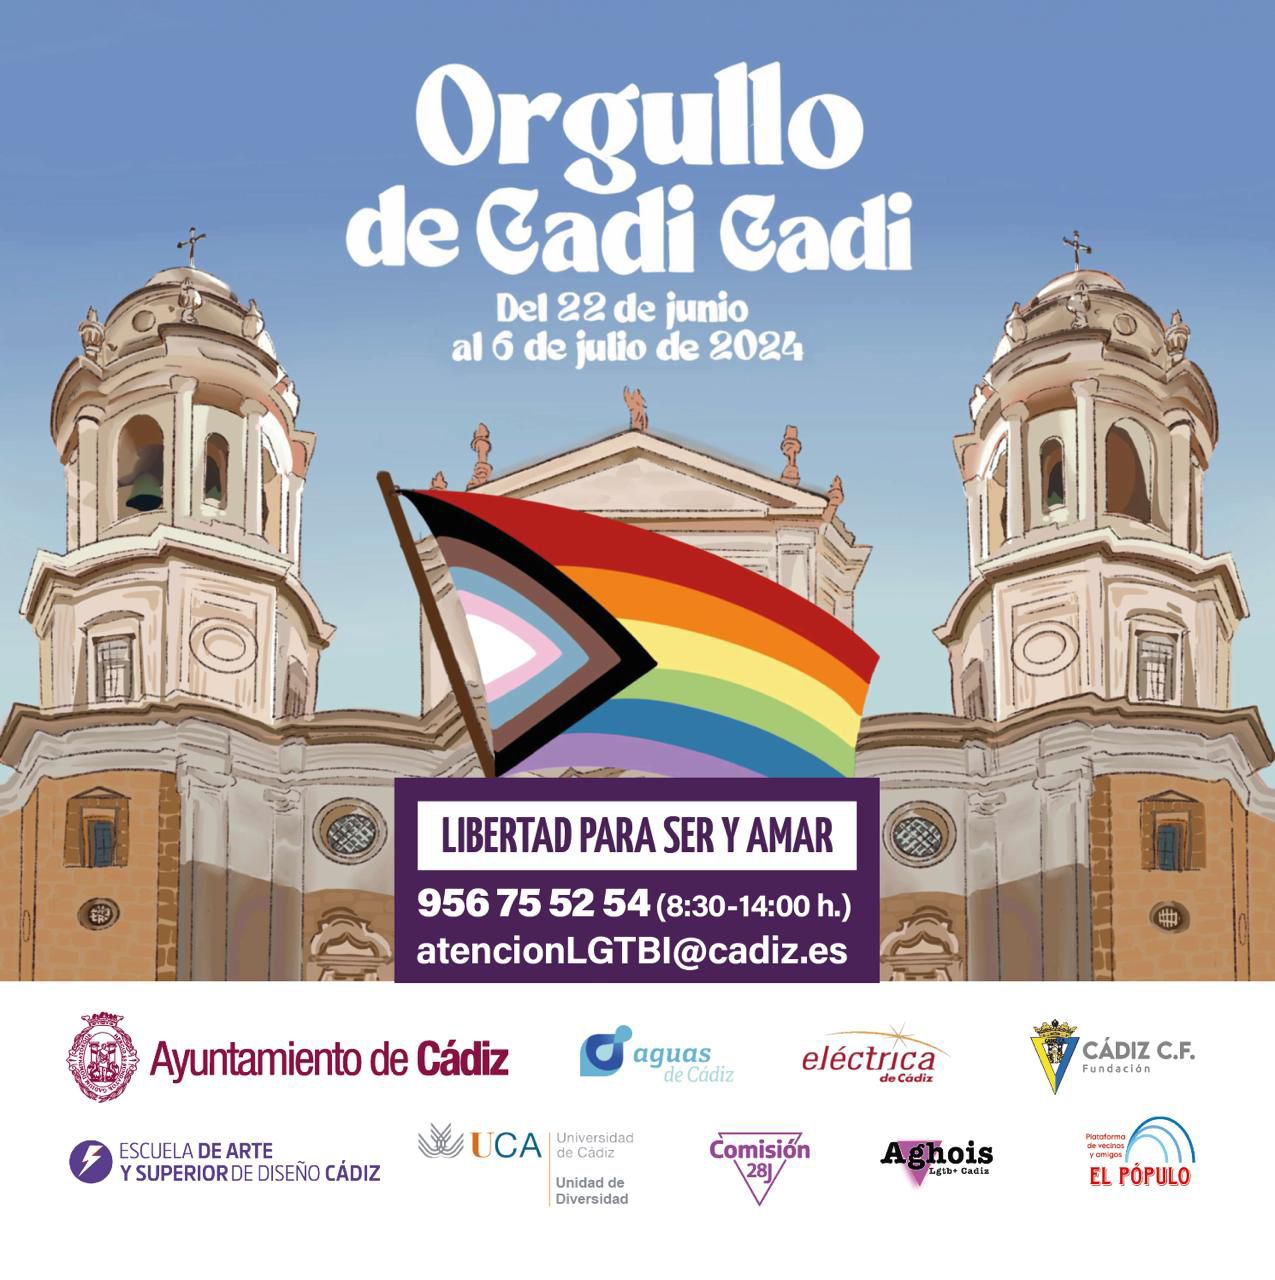 Orgullo LGTBIQAP+ 2024 de Cádiz “Orgullo de Cadi Cadi”